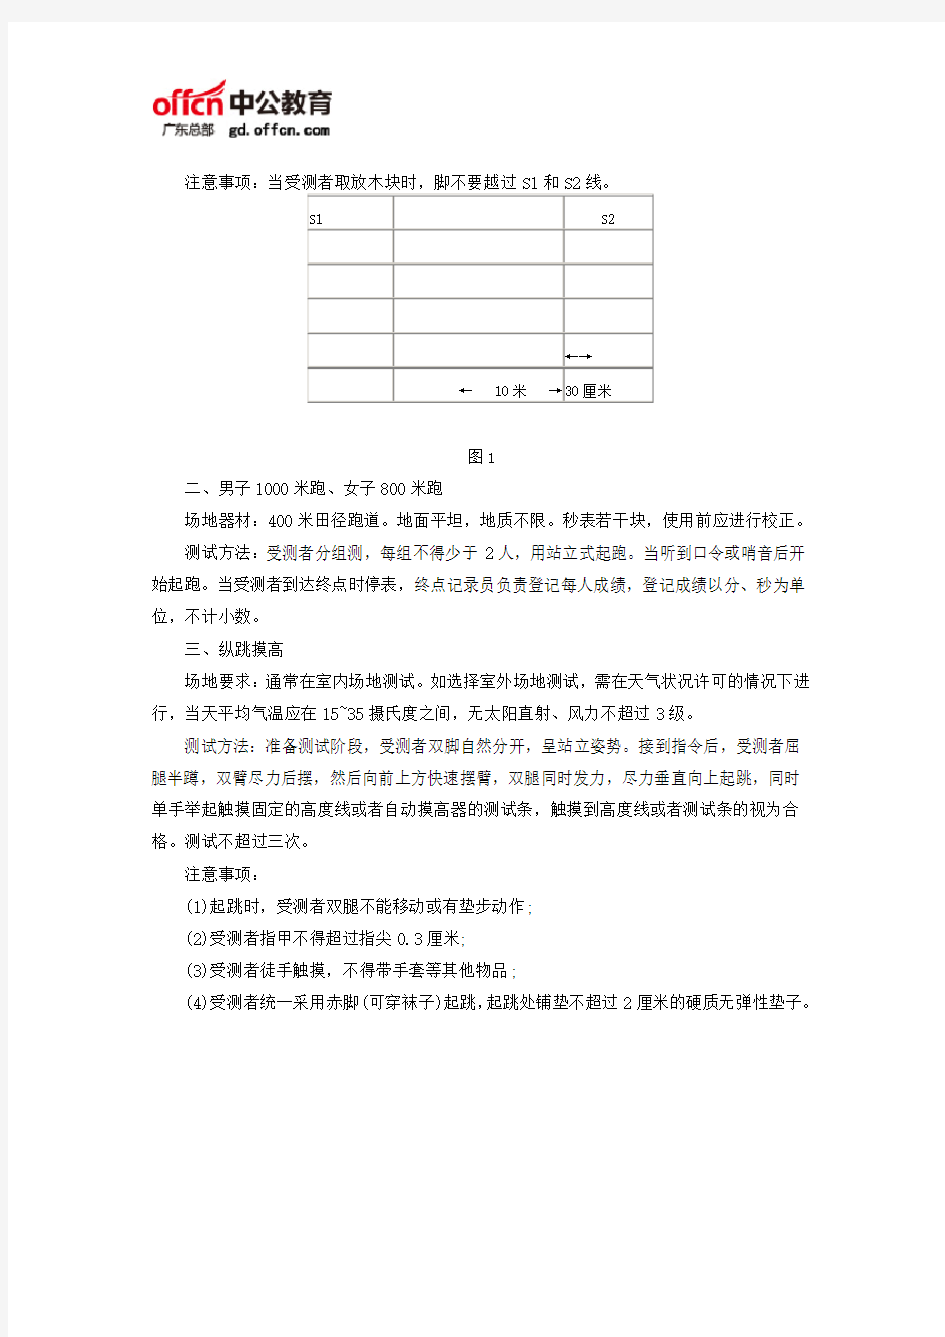 2018广东公务员考试公安体能测试的标准